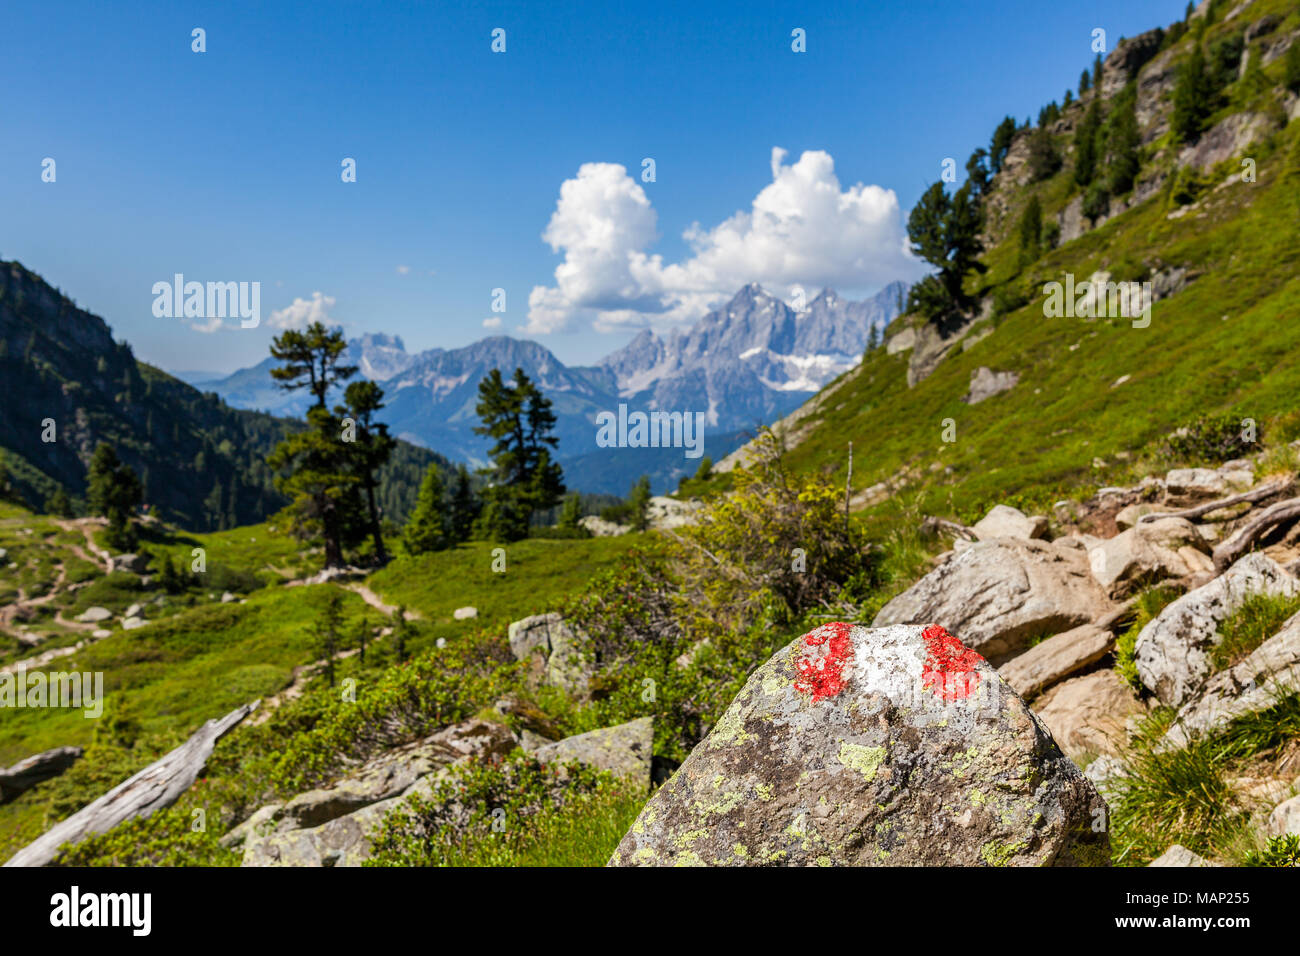 Wandern mark Zeichen rot weiss rot auf Rock am Berg Reiteralm mit Fernsicht  auf die Berge Dachstein in Österreich lackiert Stockfotografie - Alamy